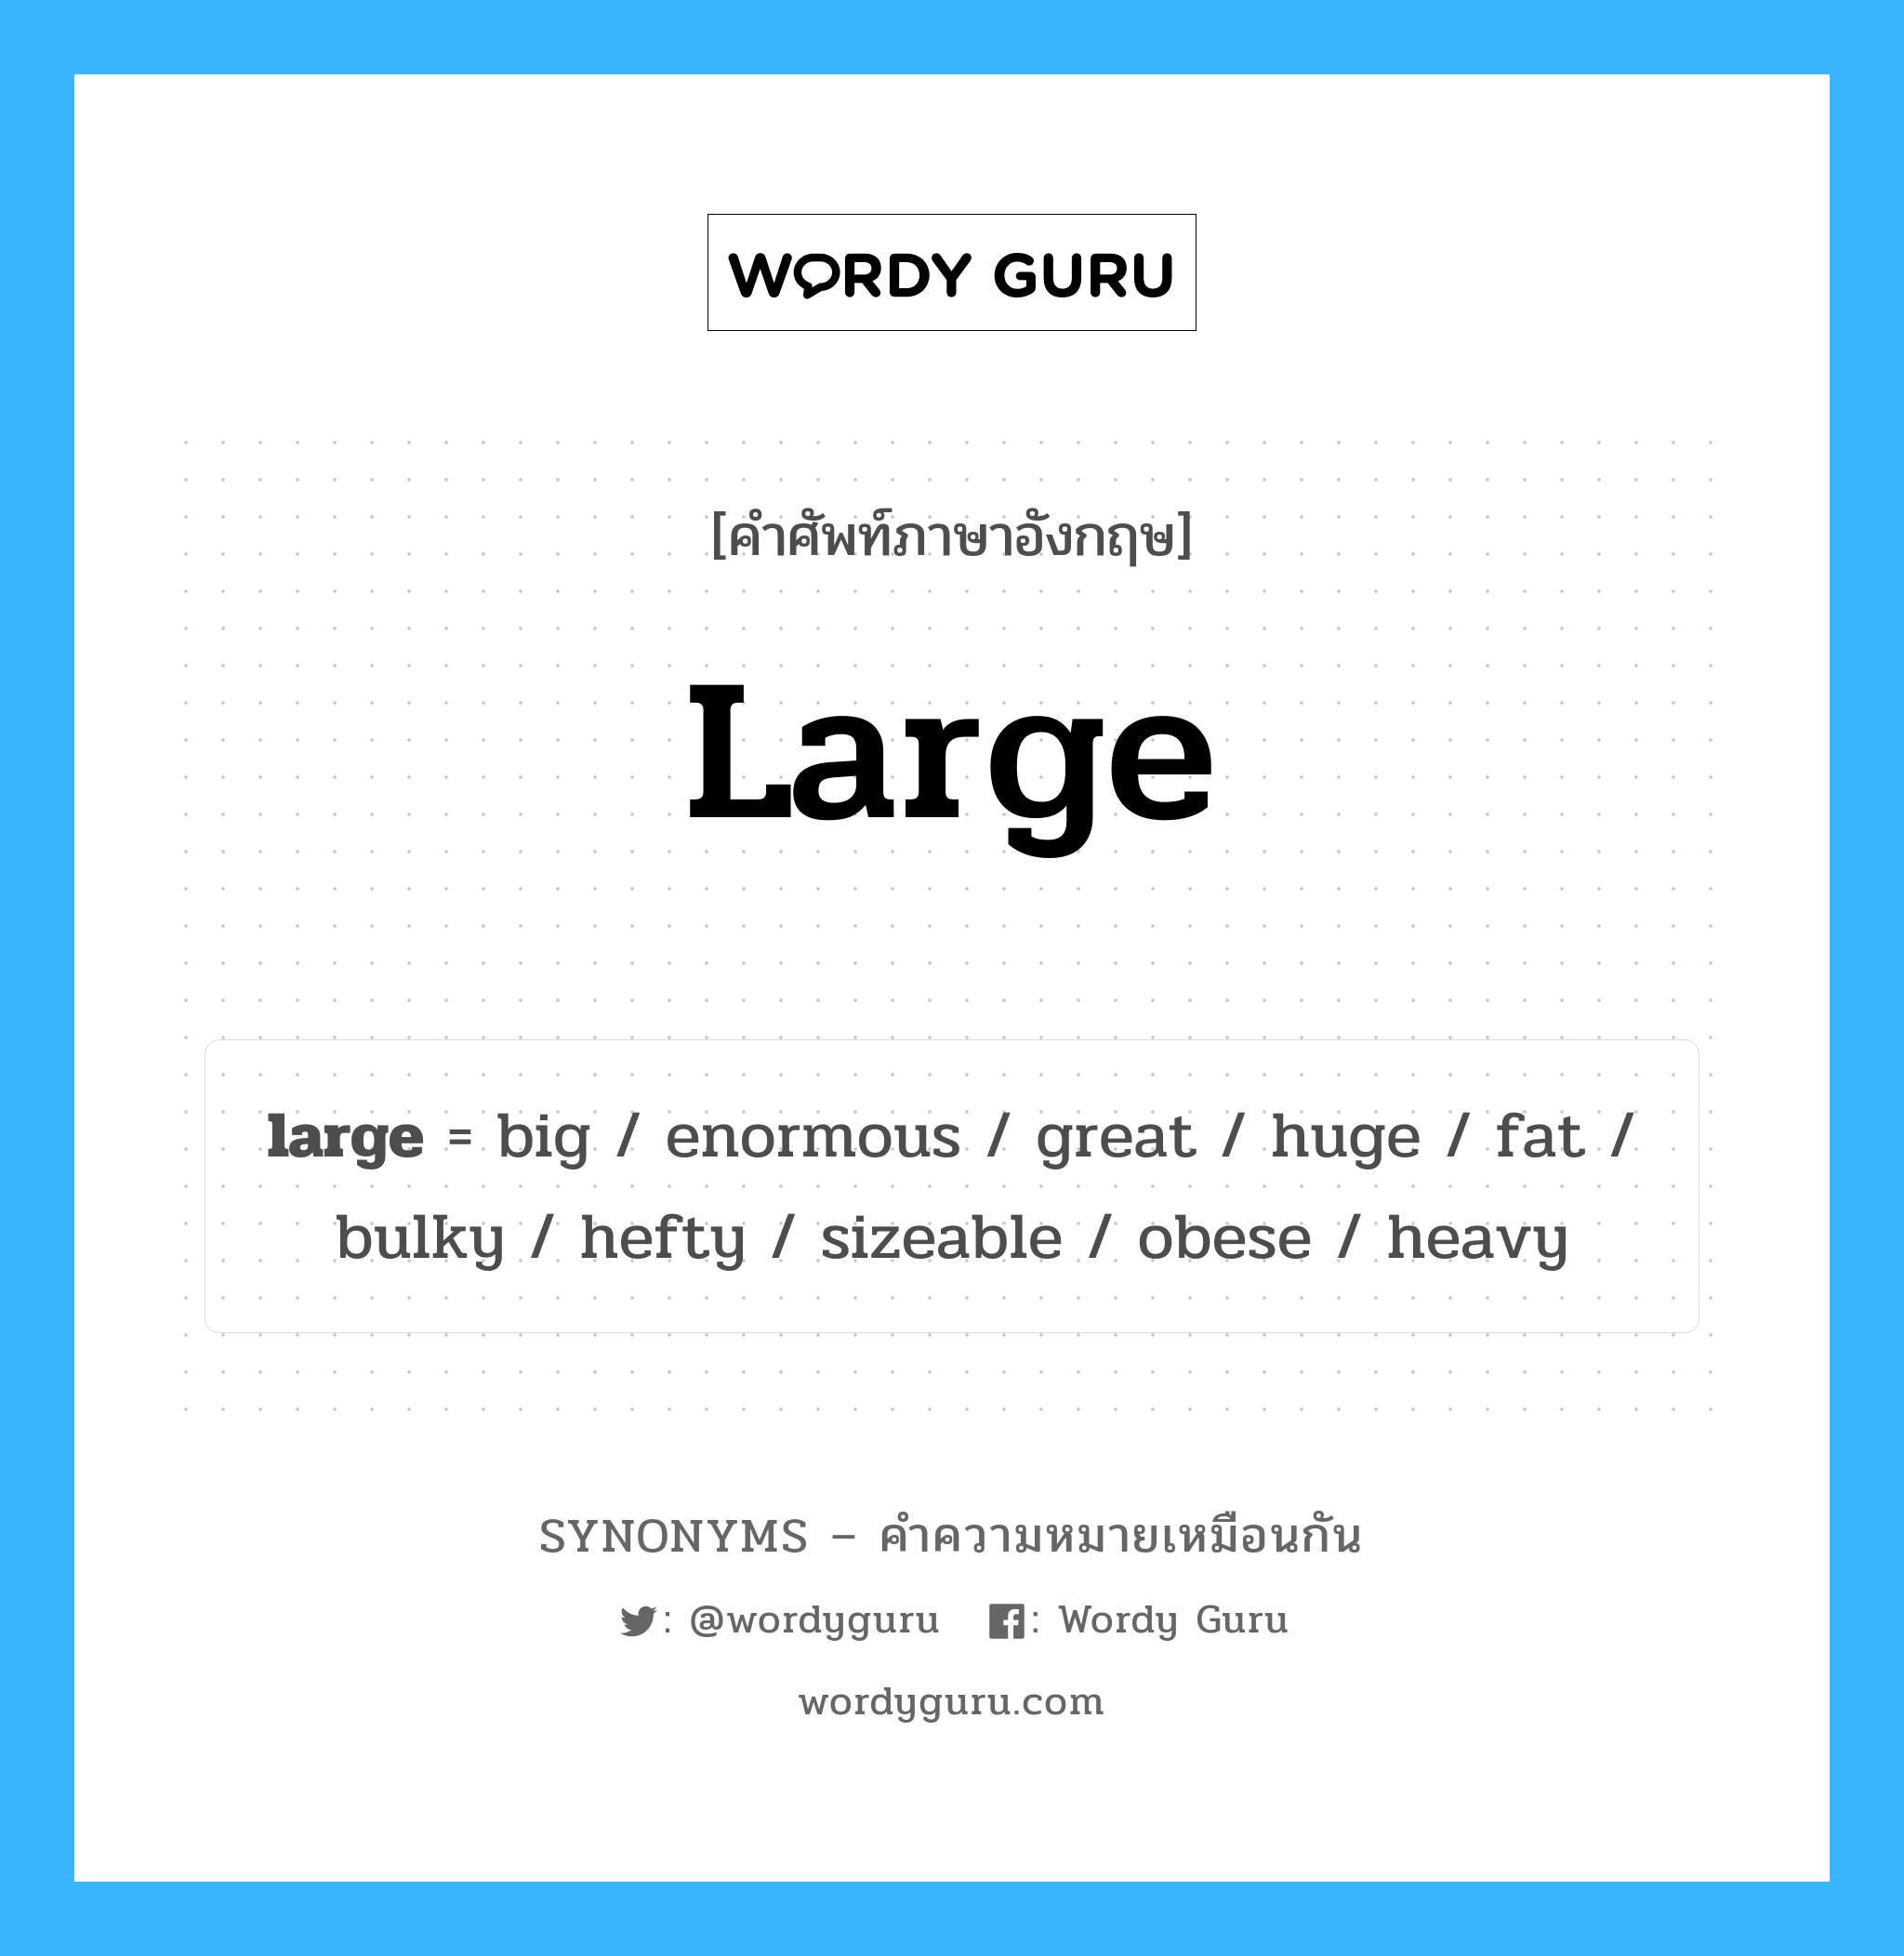 fat เป็นหนึ่งใน large และมีคำอื่น ๆ อีกดังนี้, คำศัพท์ภาษาอังกฤษ fat ความหมายคล้ายกันกับ large แปลว่า ไขมัน หมวด large